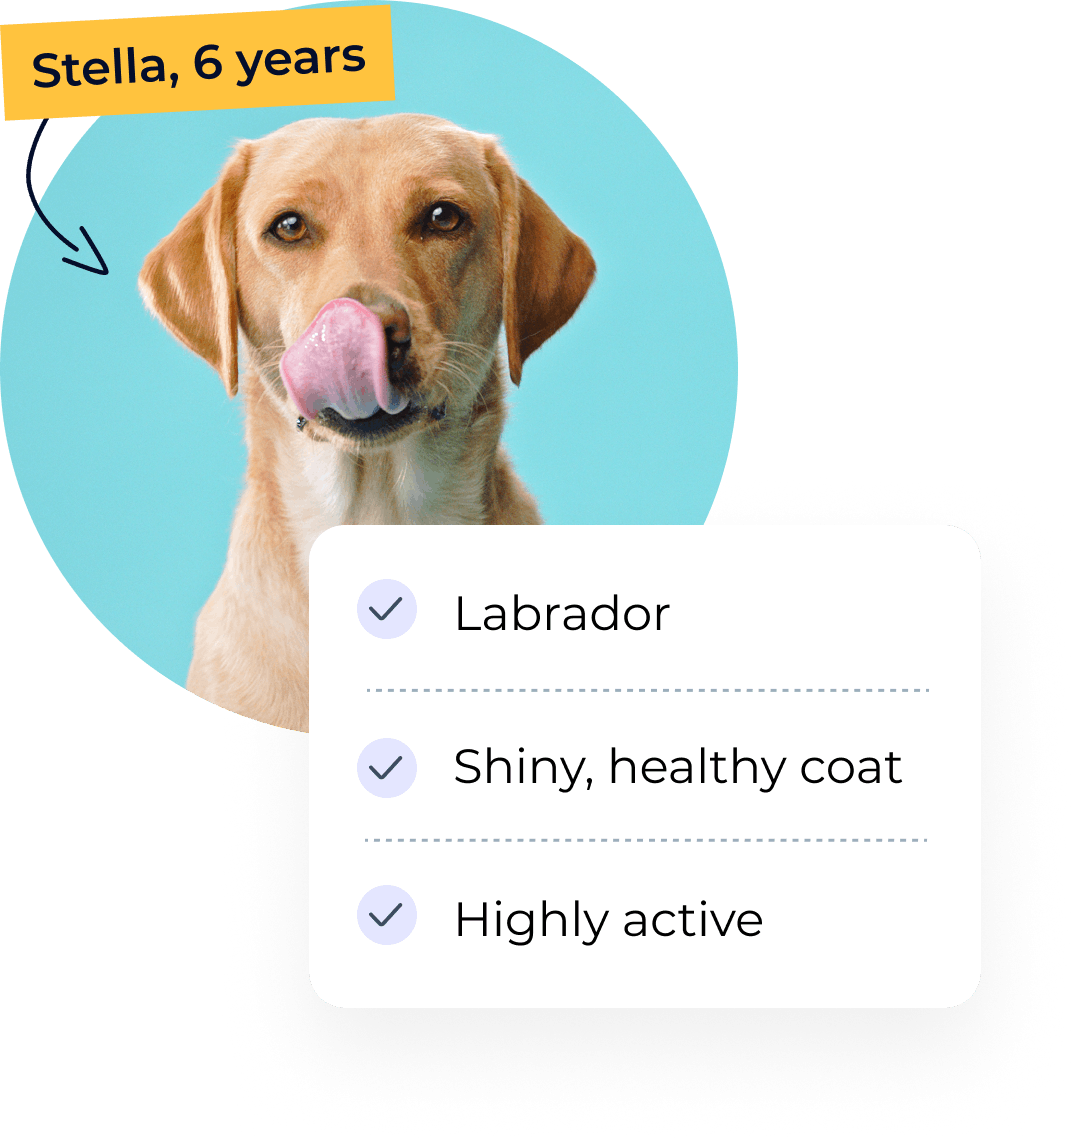 Stella the Labrador's profile